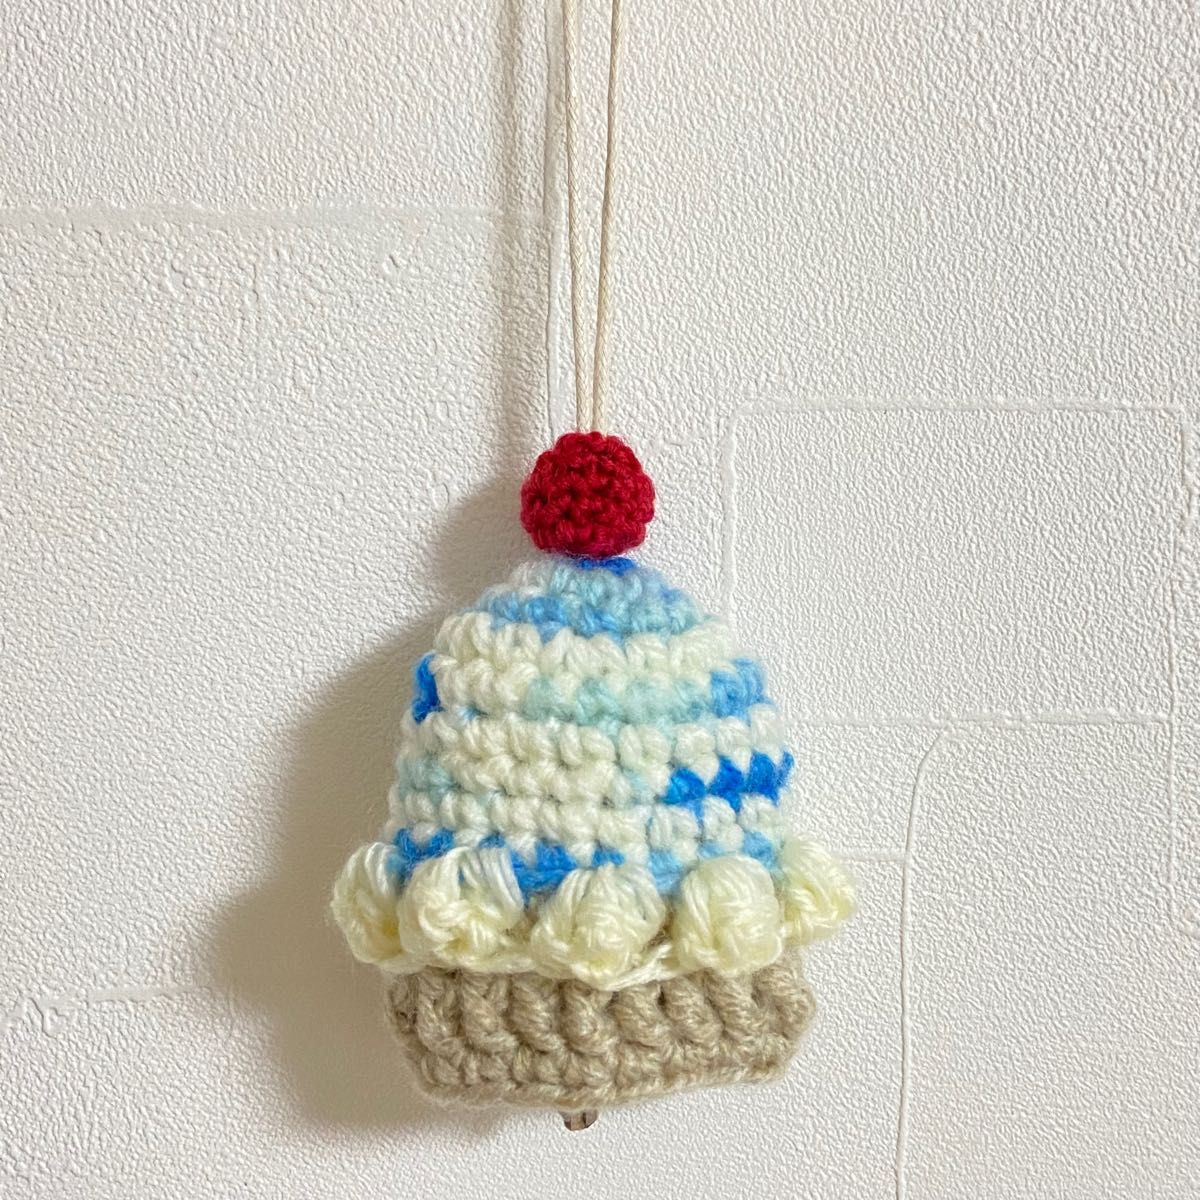 ハンドメイド カップケーキ キーカバー 手編み 編み物 鍵カバー あみぐるみ かぎ針編み